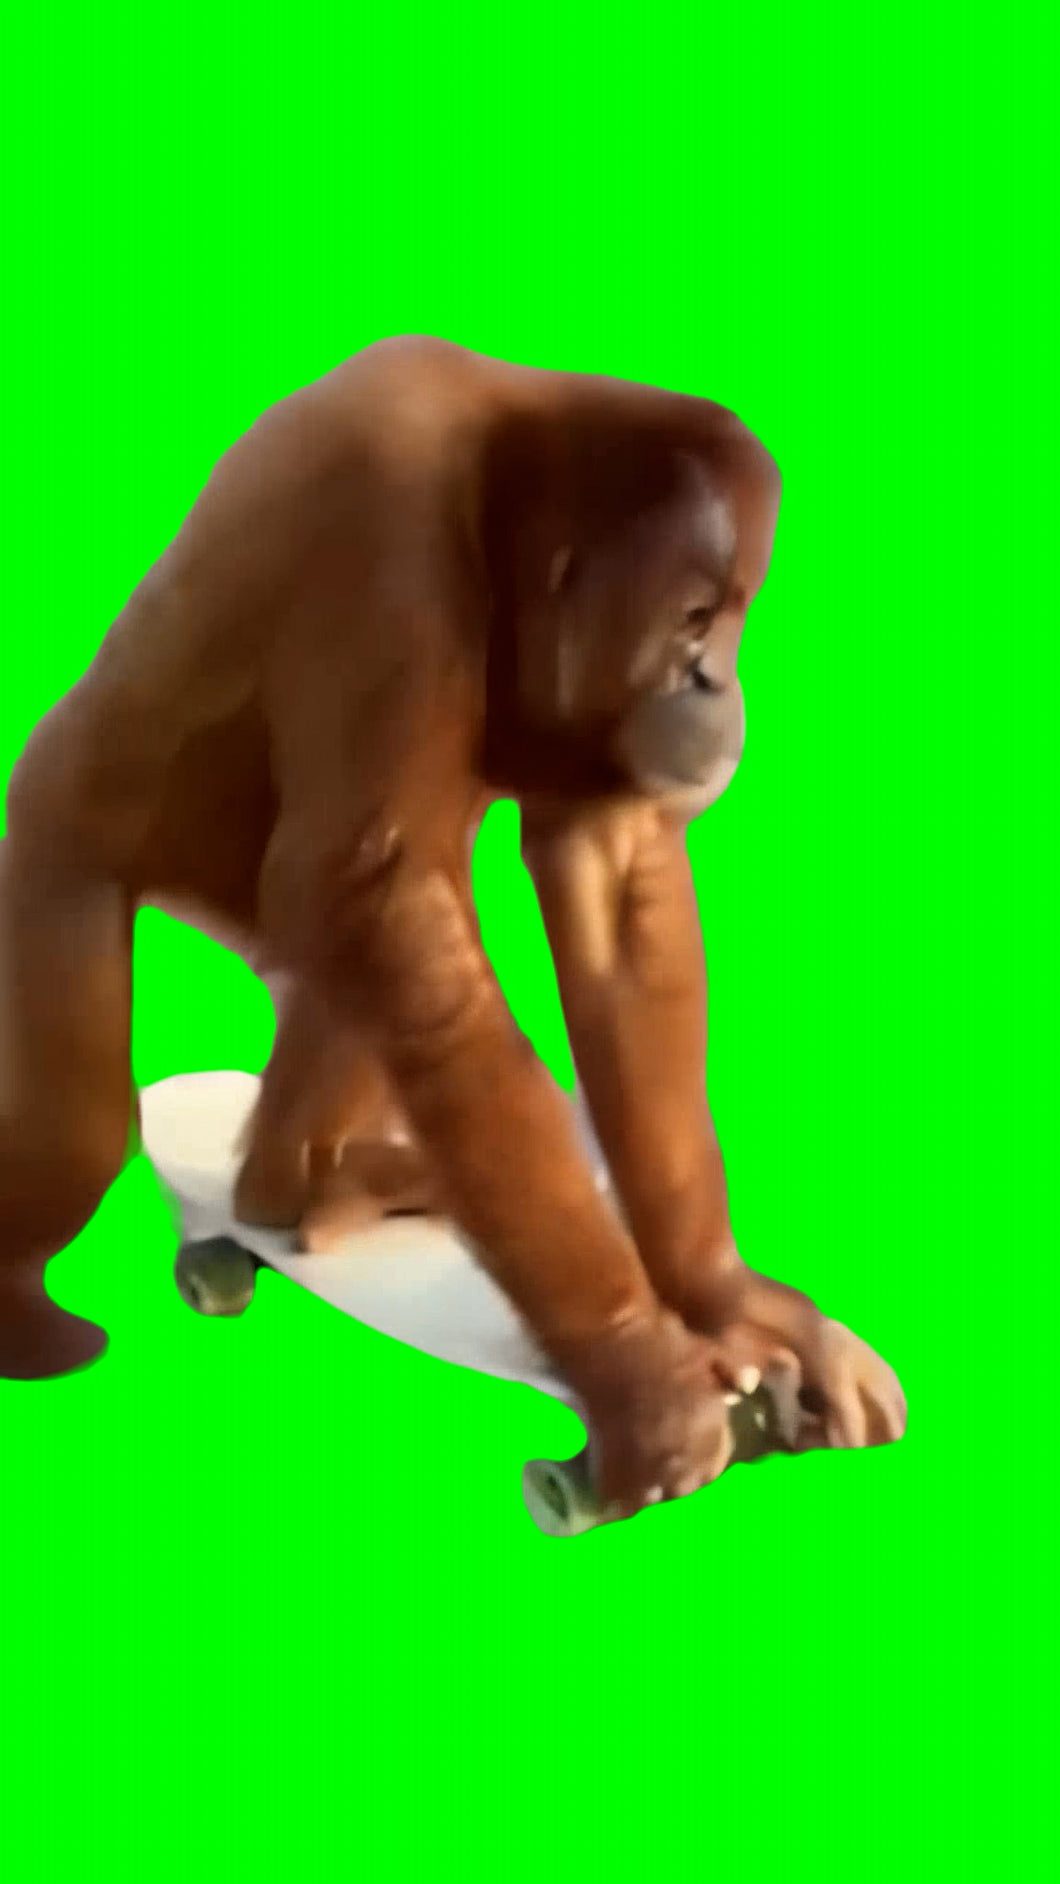 Monkey On Skateboard (Green Screen)